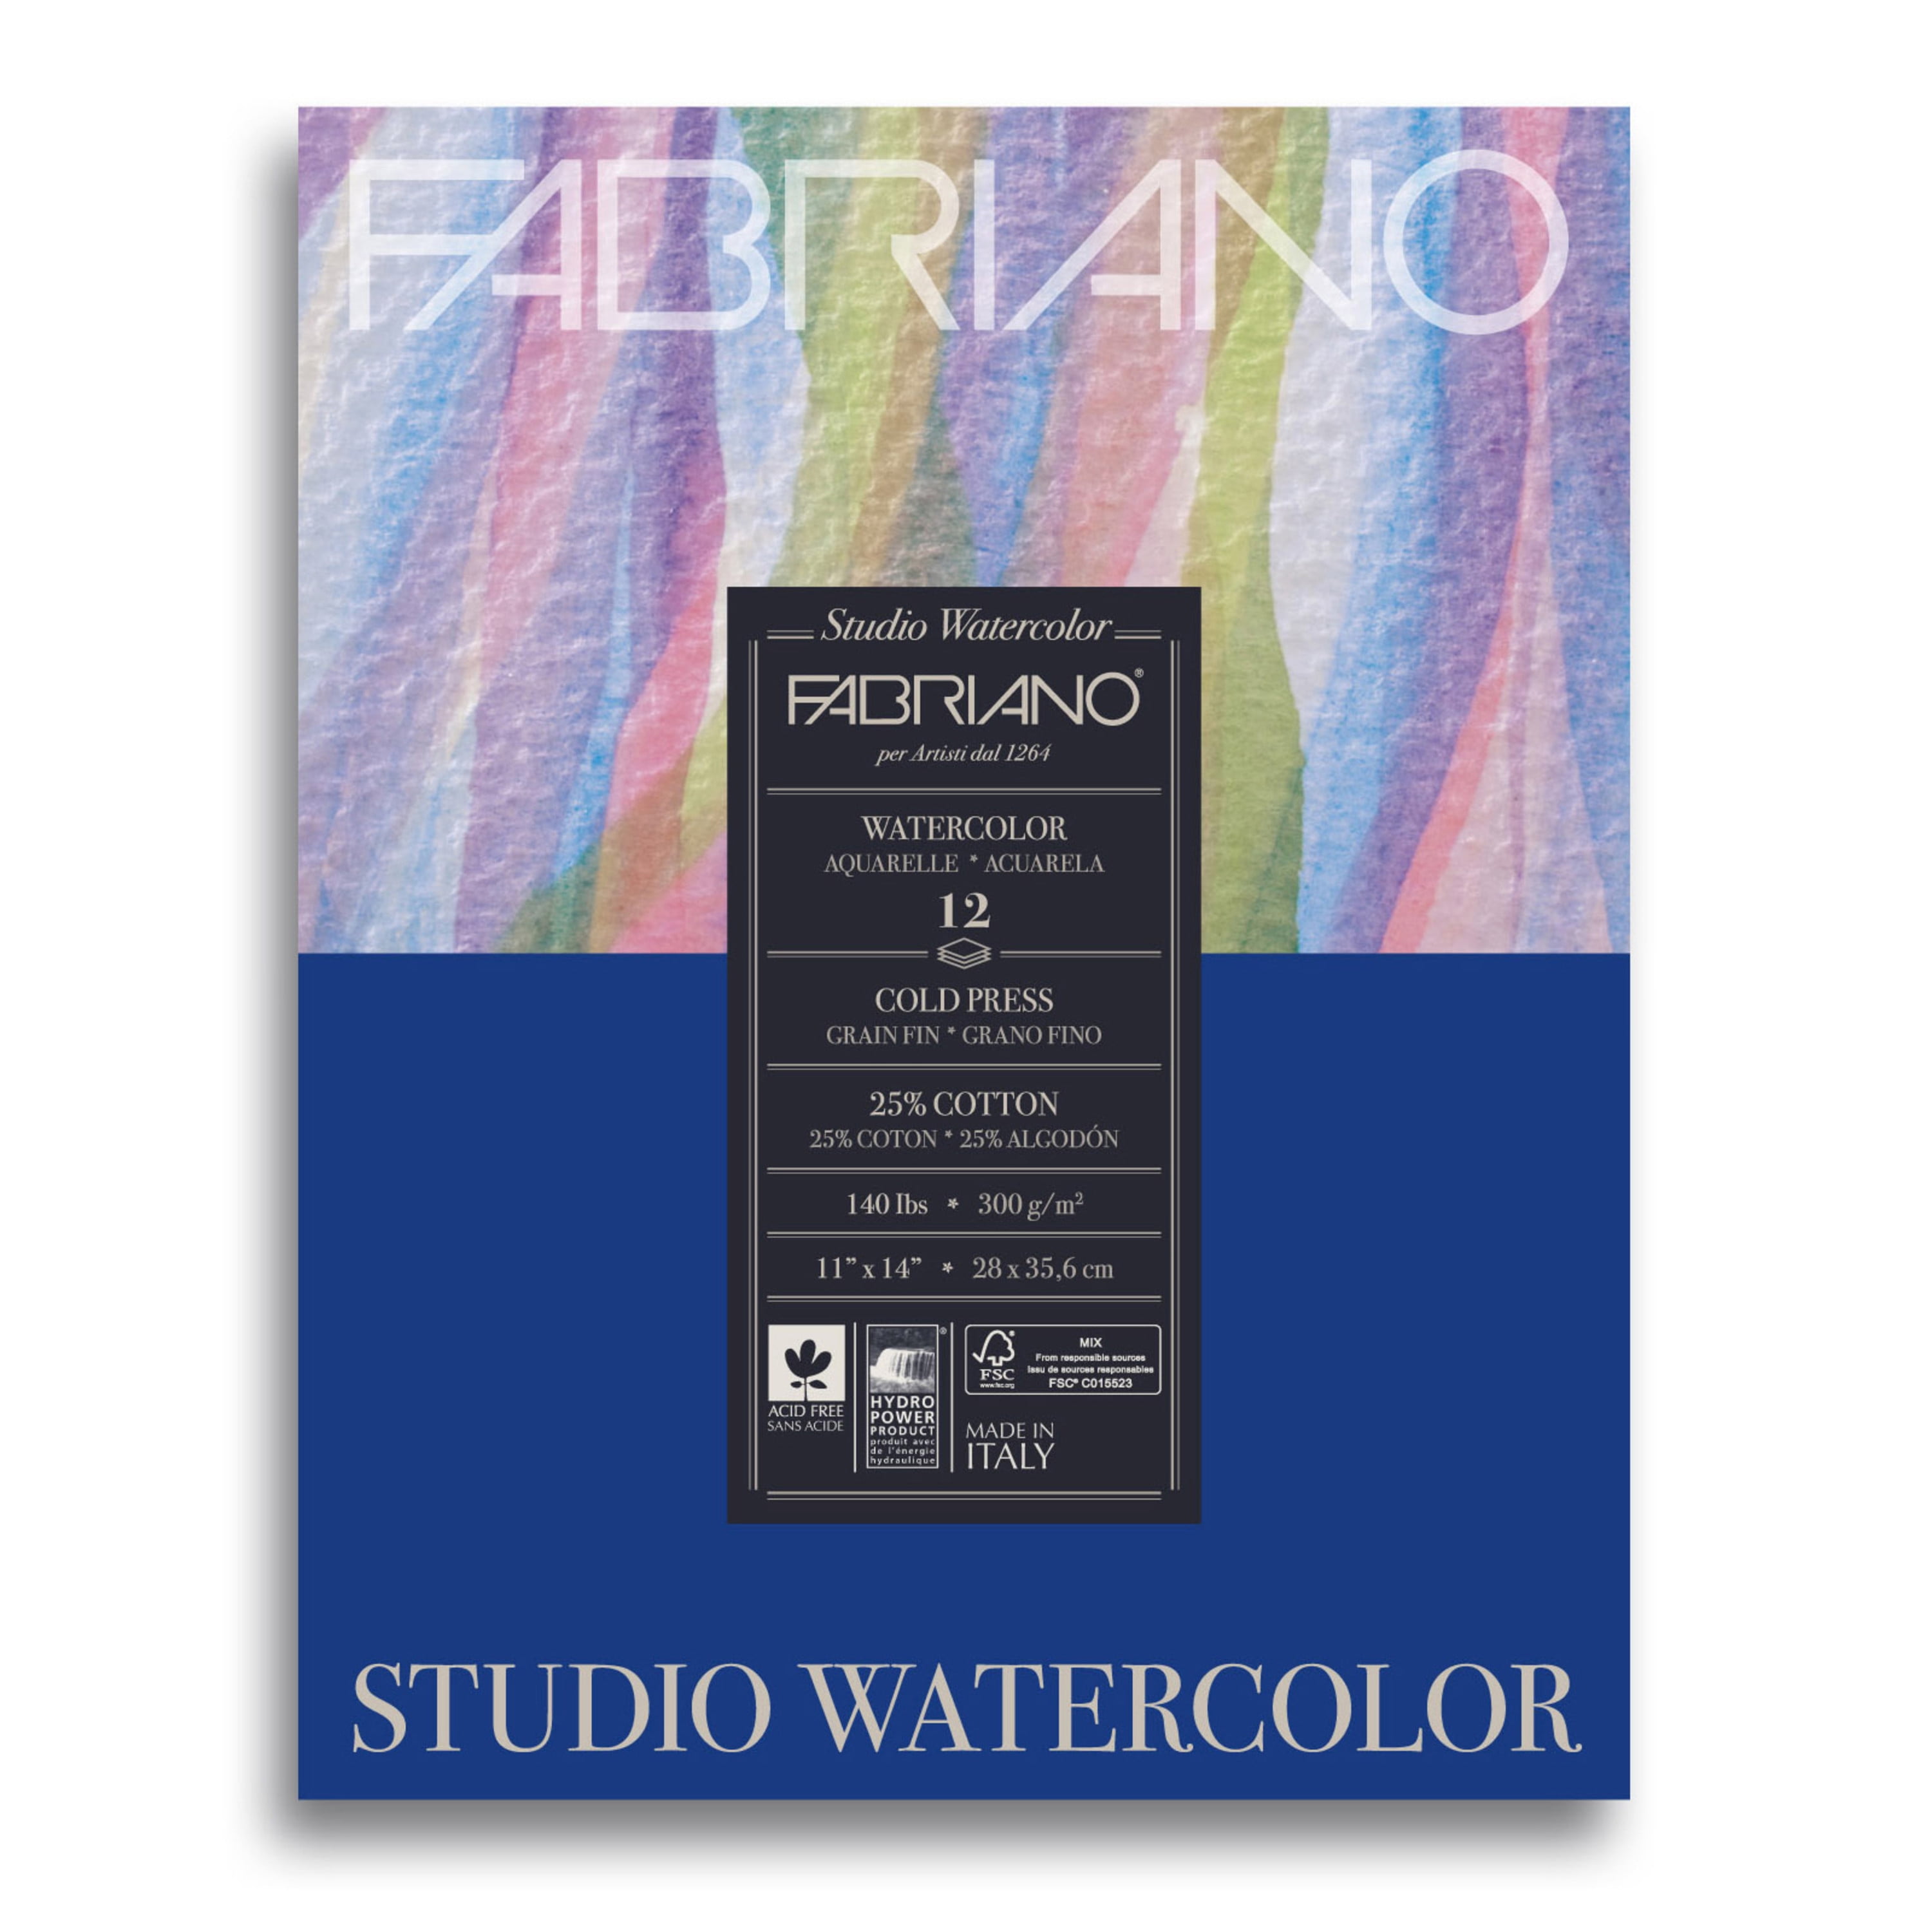 Bright White Fabriano 1264 Watercolor Pad 4 x 8